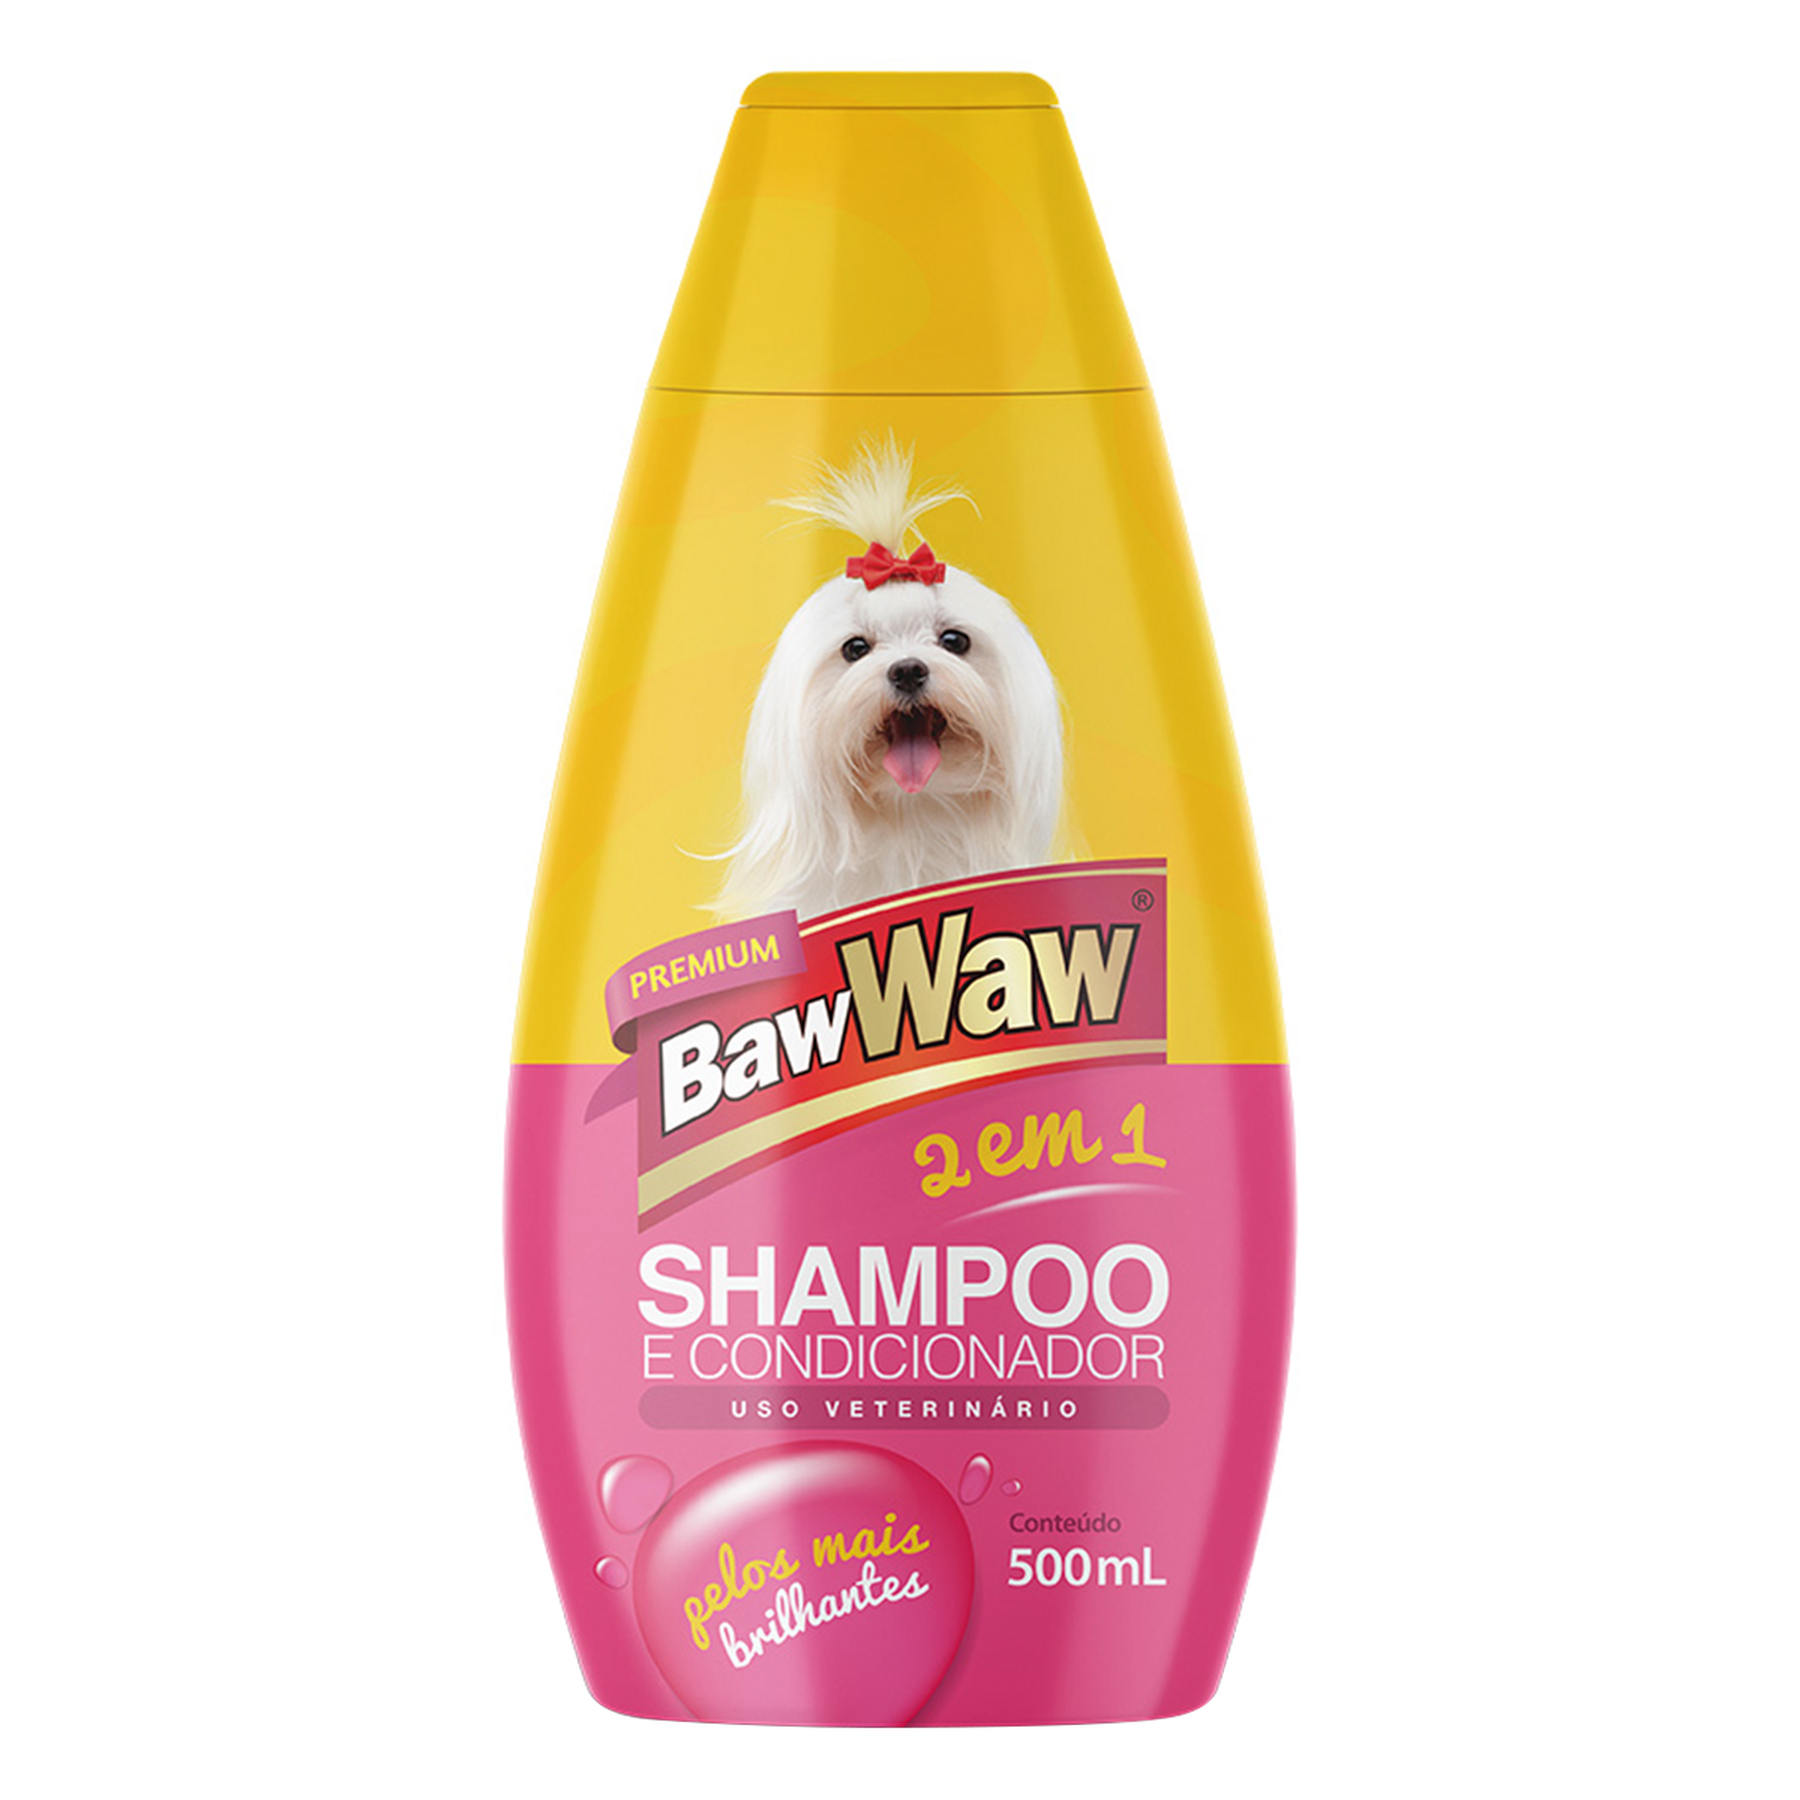 Shampoo e Condicionador 2 em 1 Baw Waw Frasco 500ml